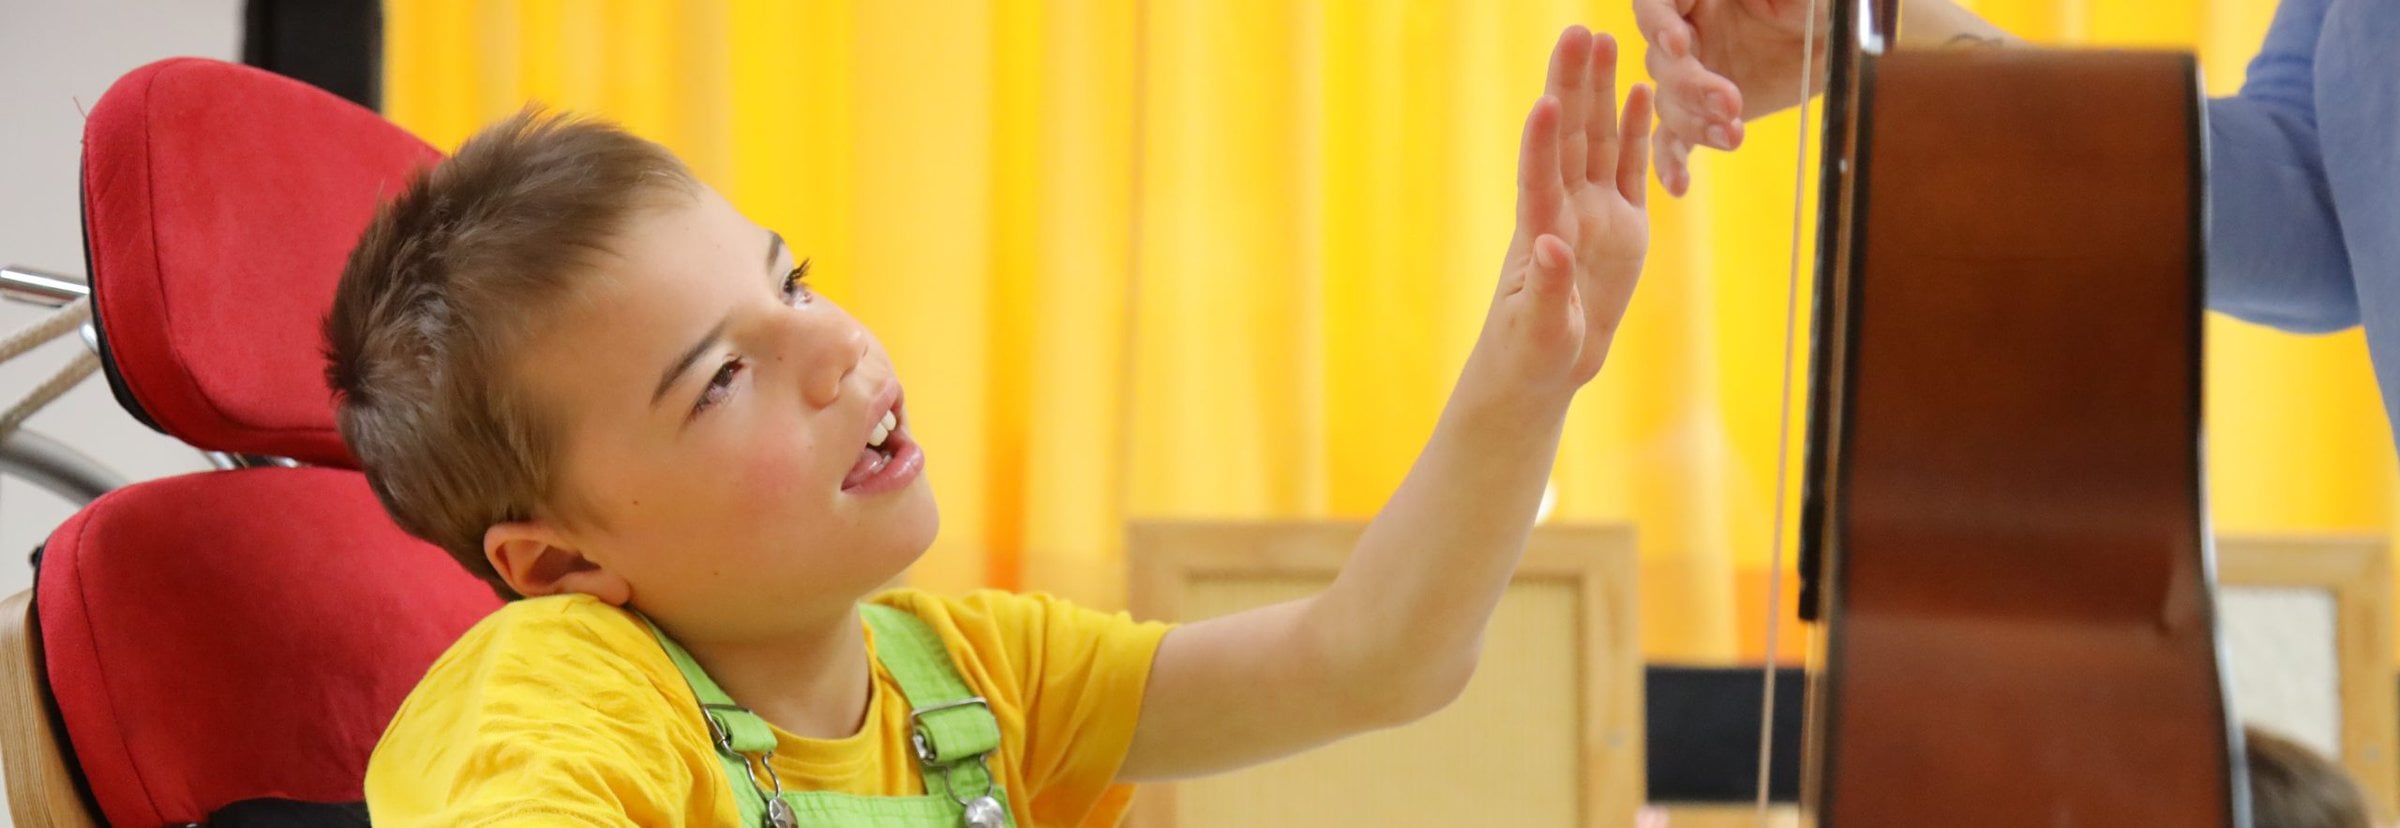 Junge mit Hörsehbehinderung greift nach Hand einer Lehrerin